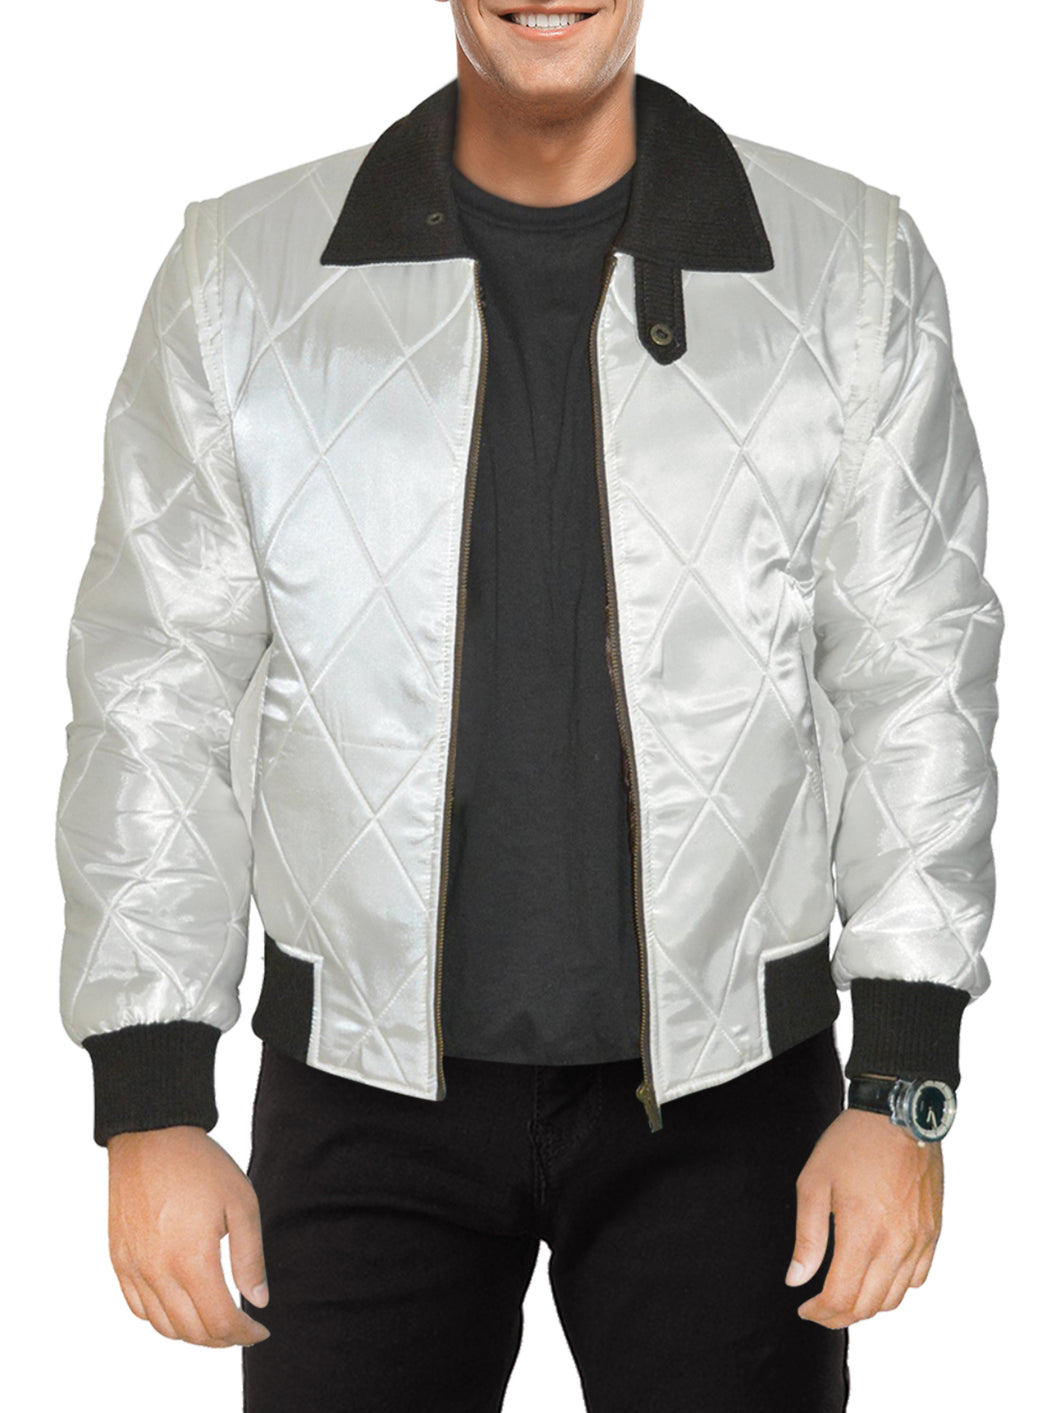 Men's Exclusive White Scorpion Satin Jacket